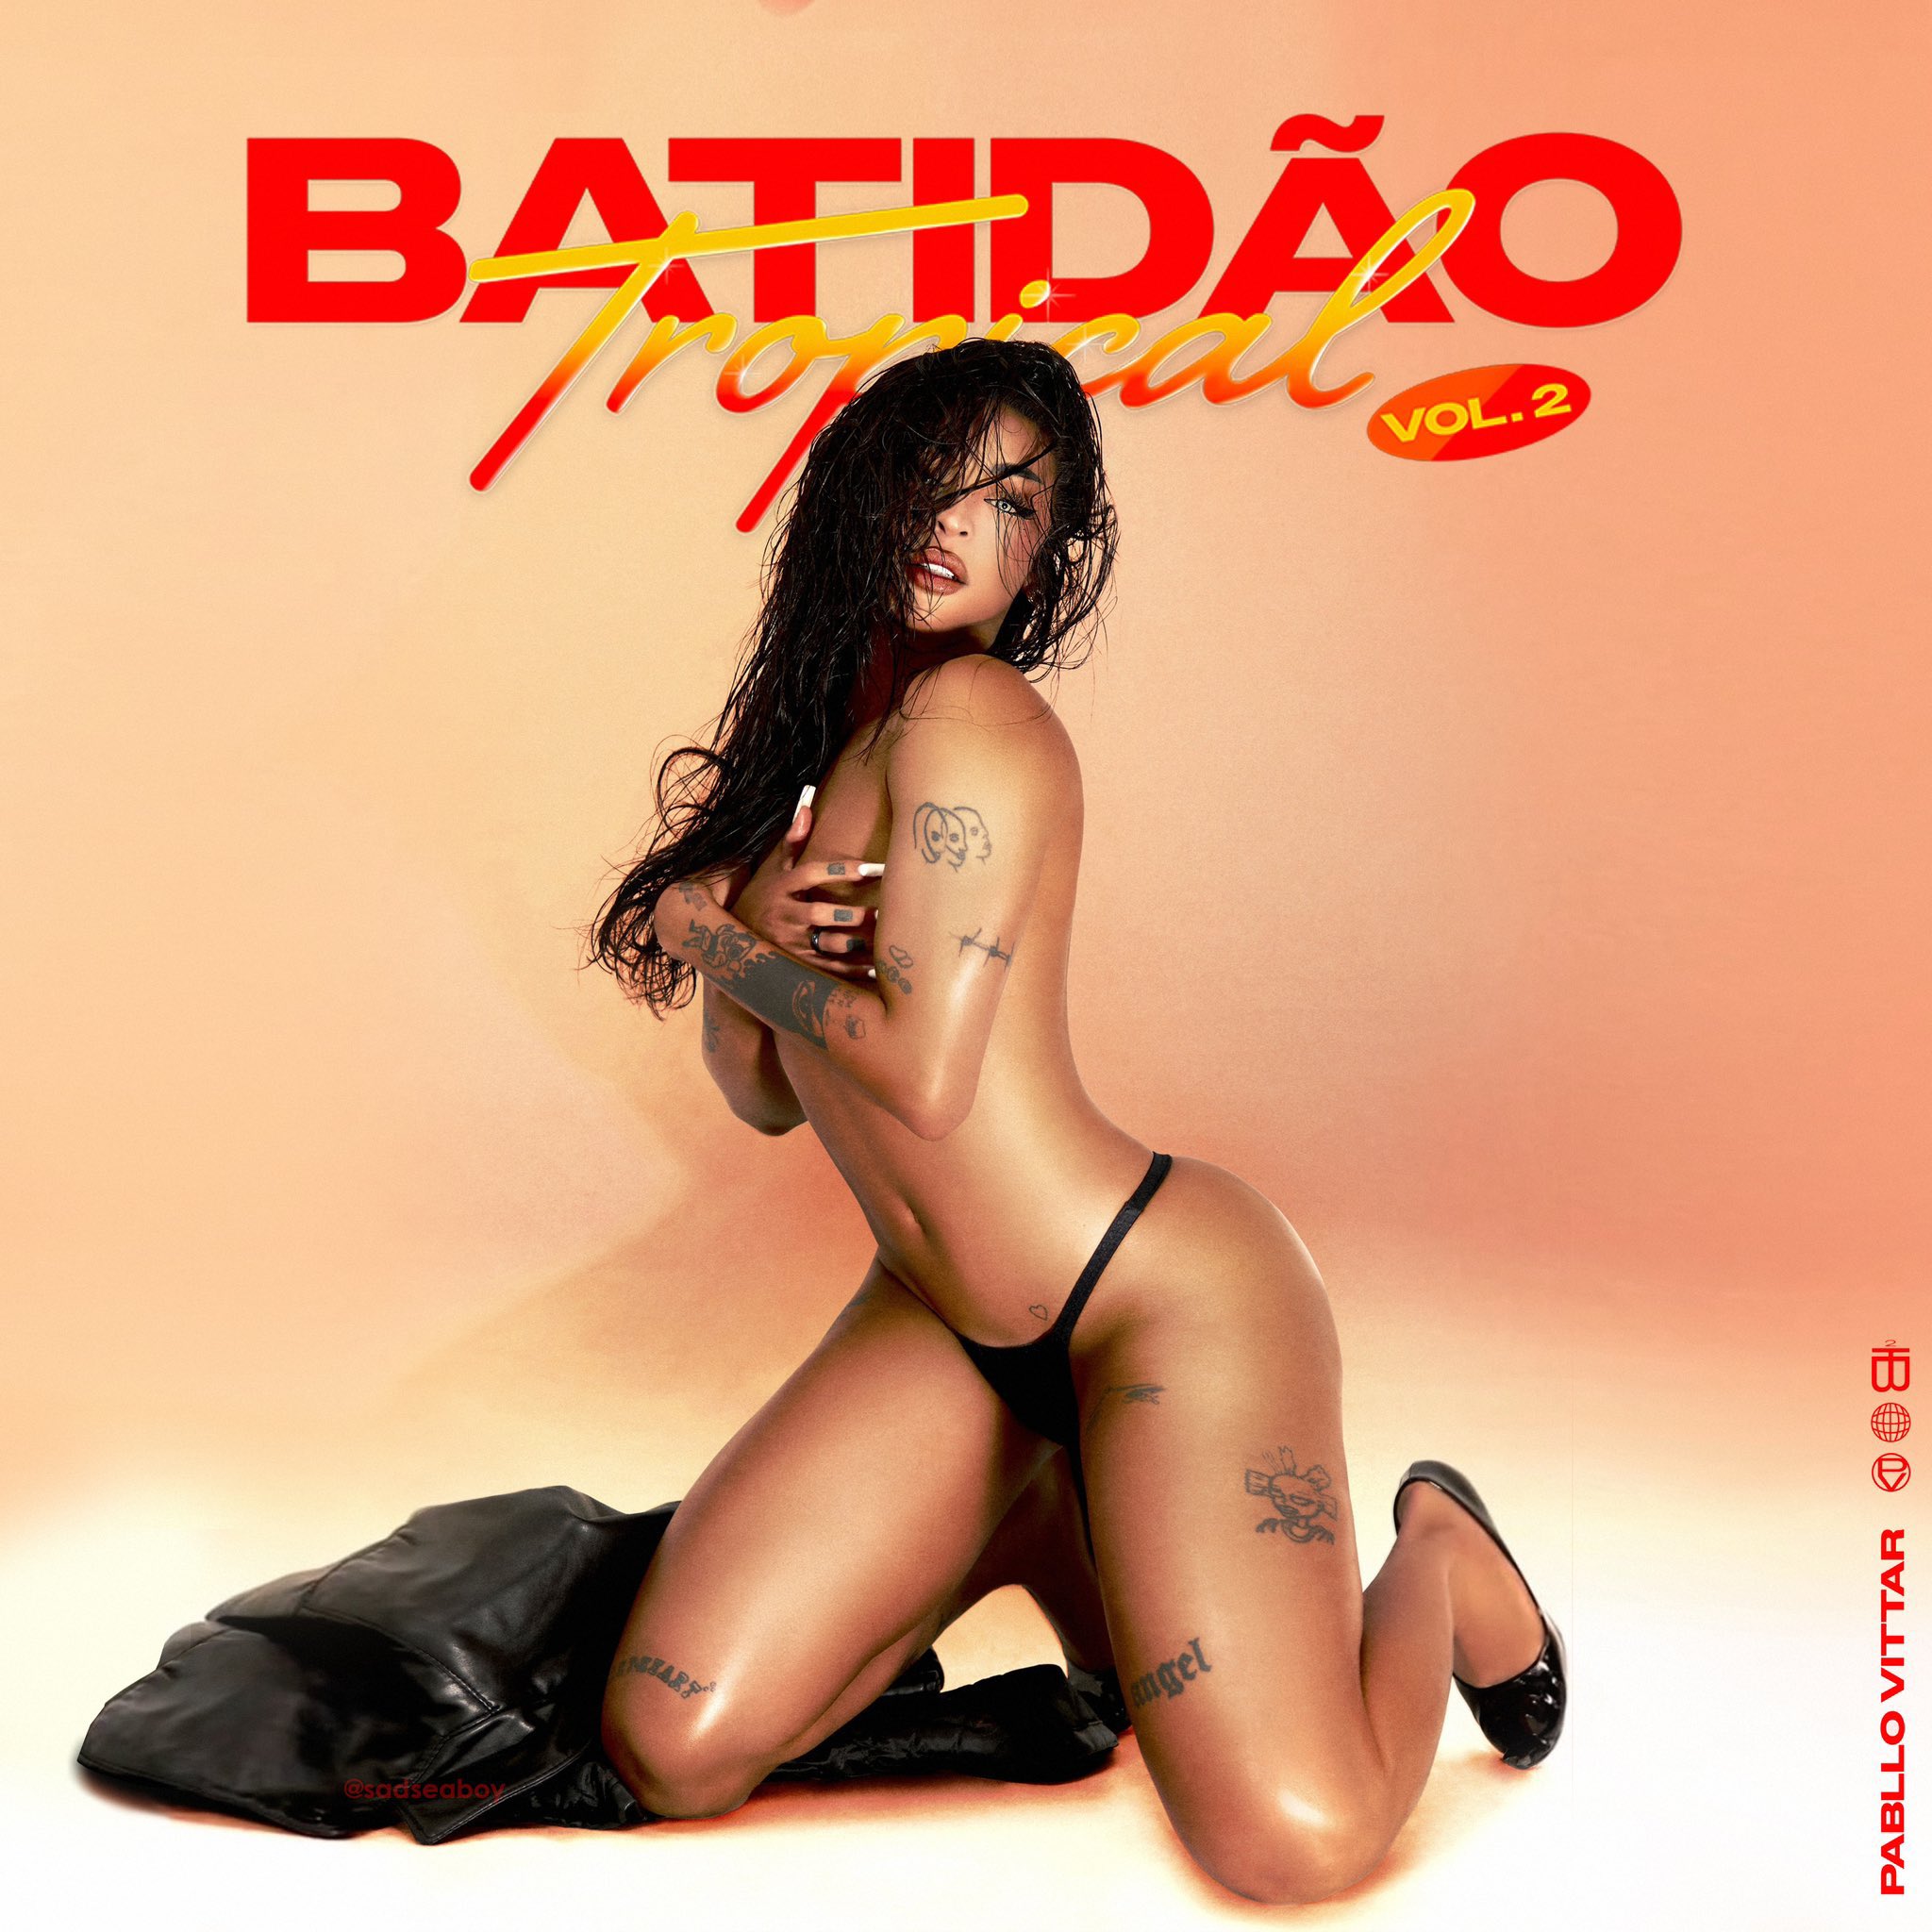 Pabllo Vittar Batidão Tropical, Vol. 2 cover artwork